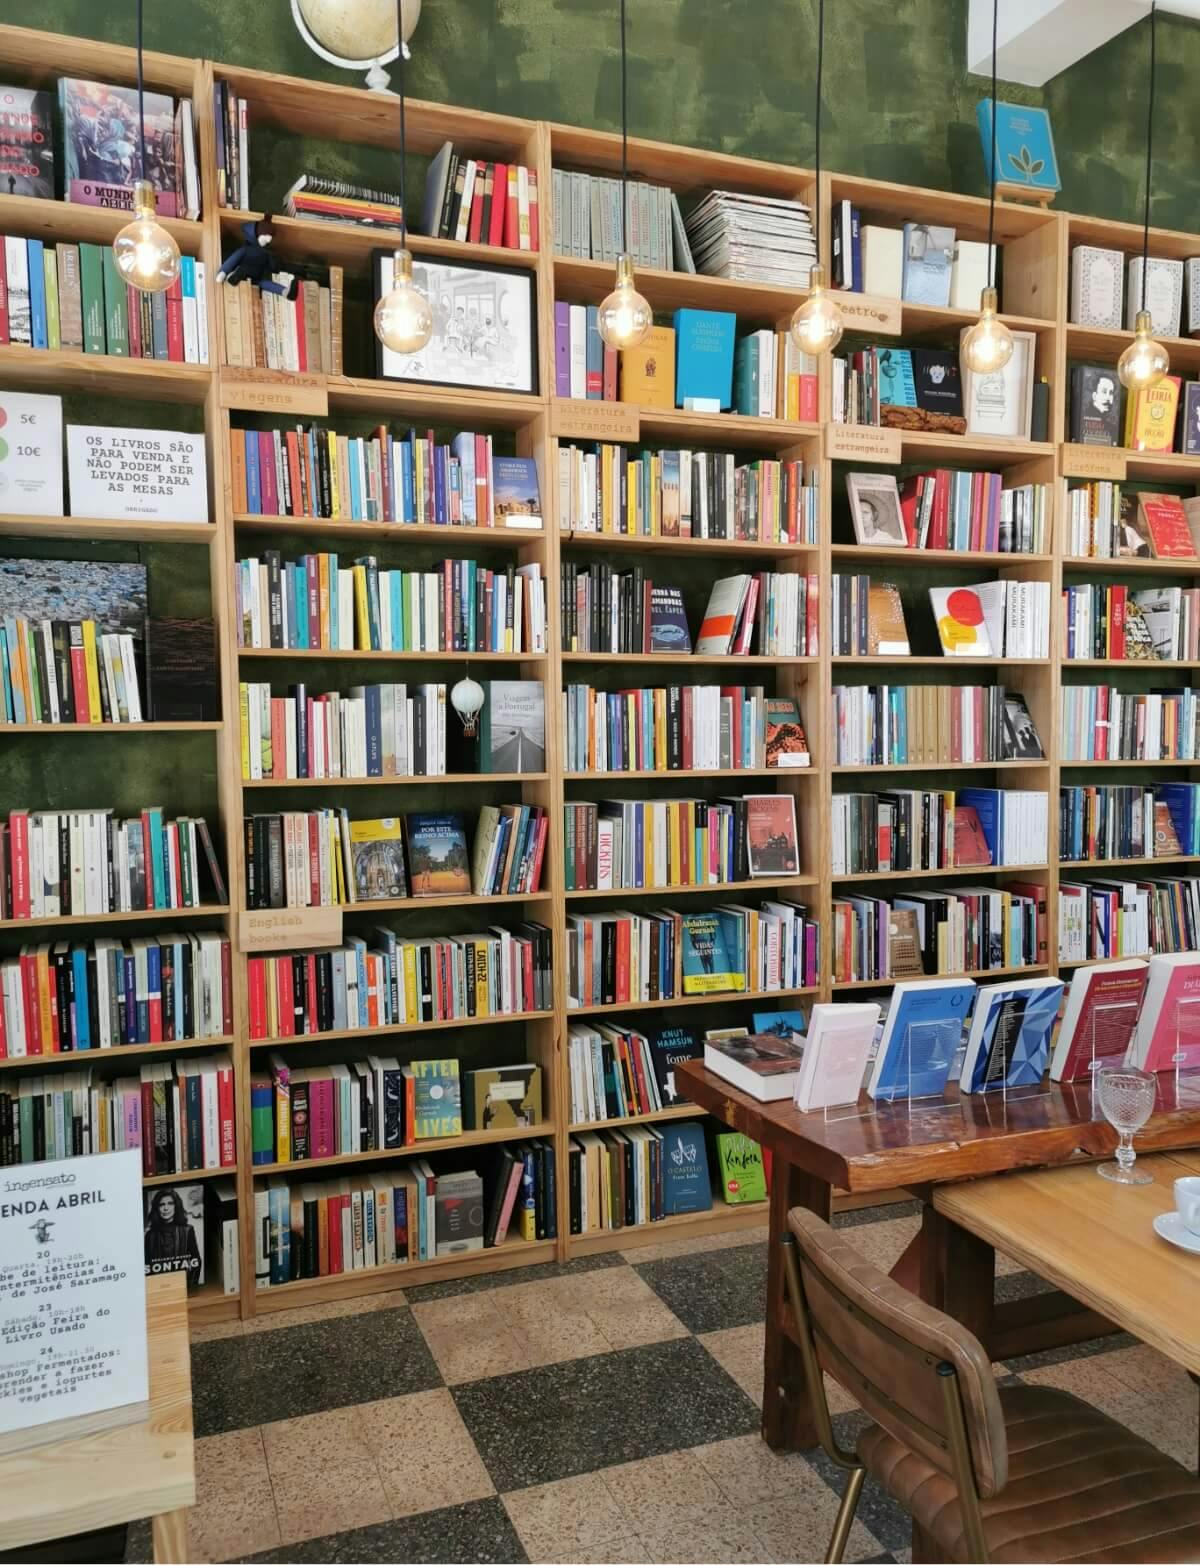 Insensato Café-Livraria